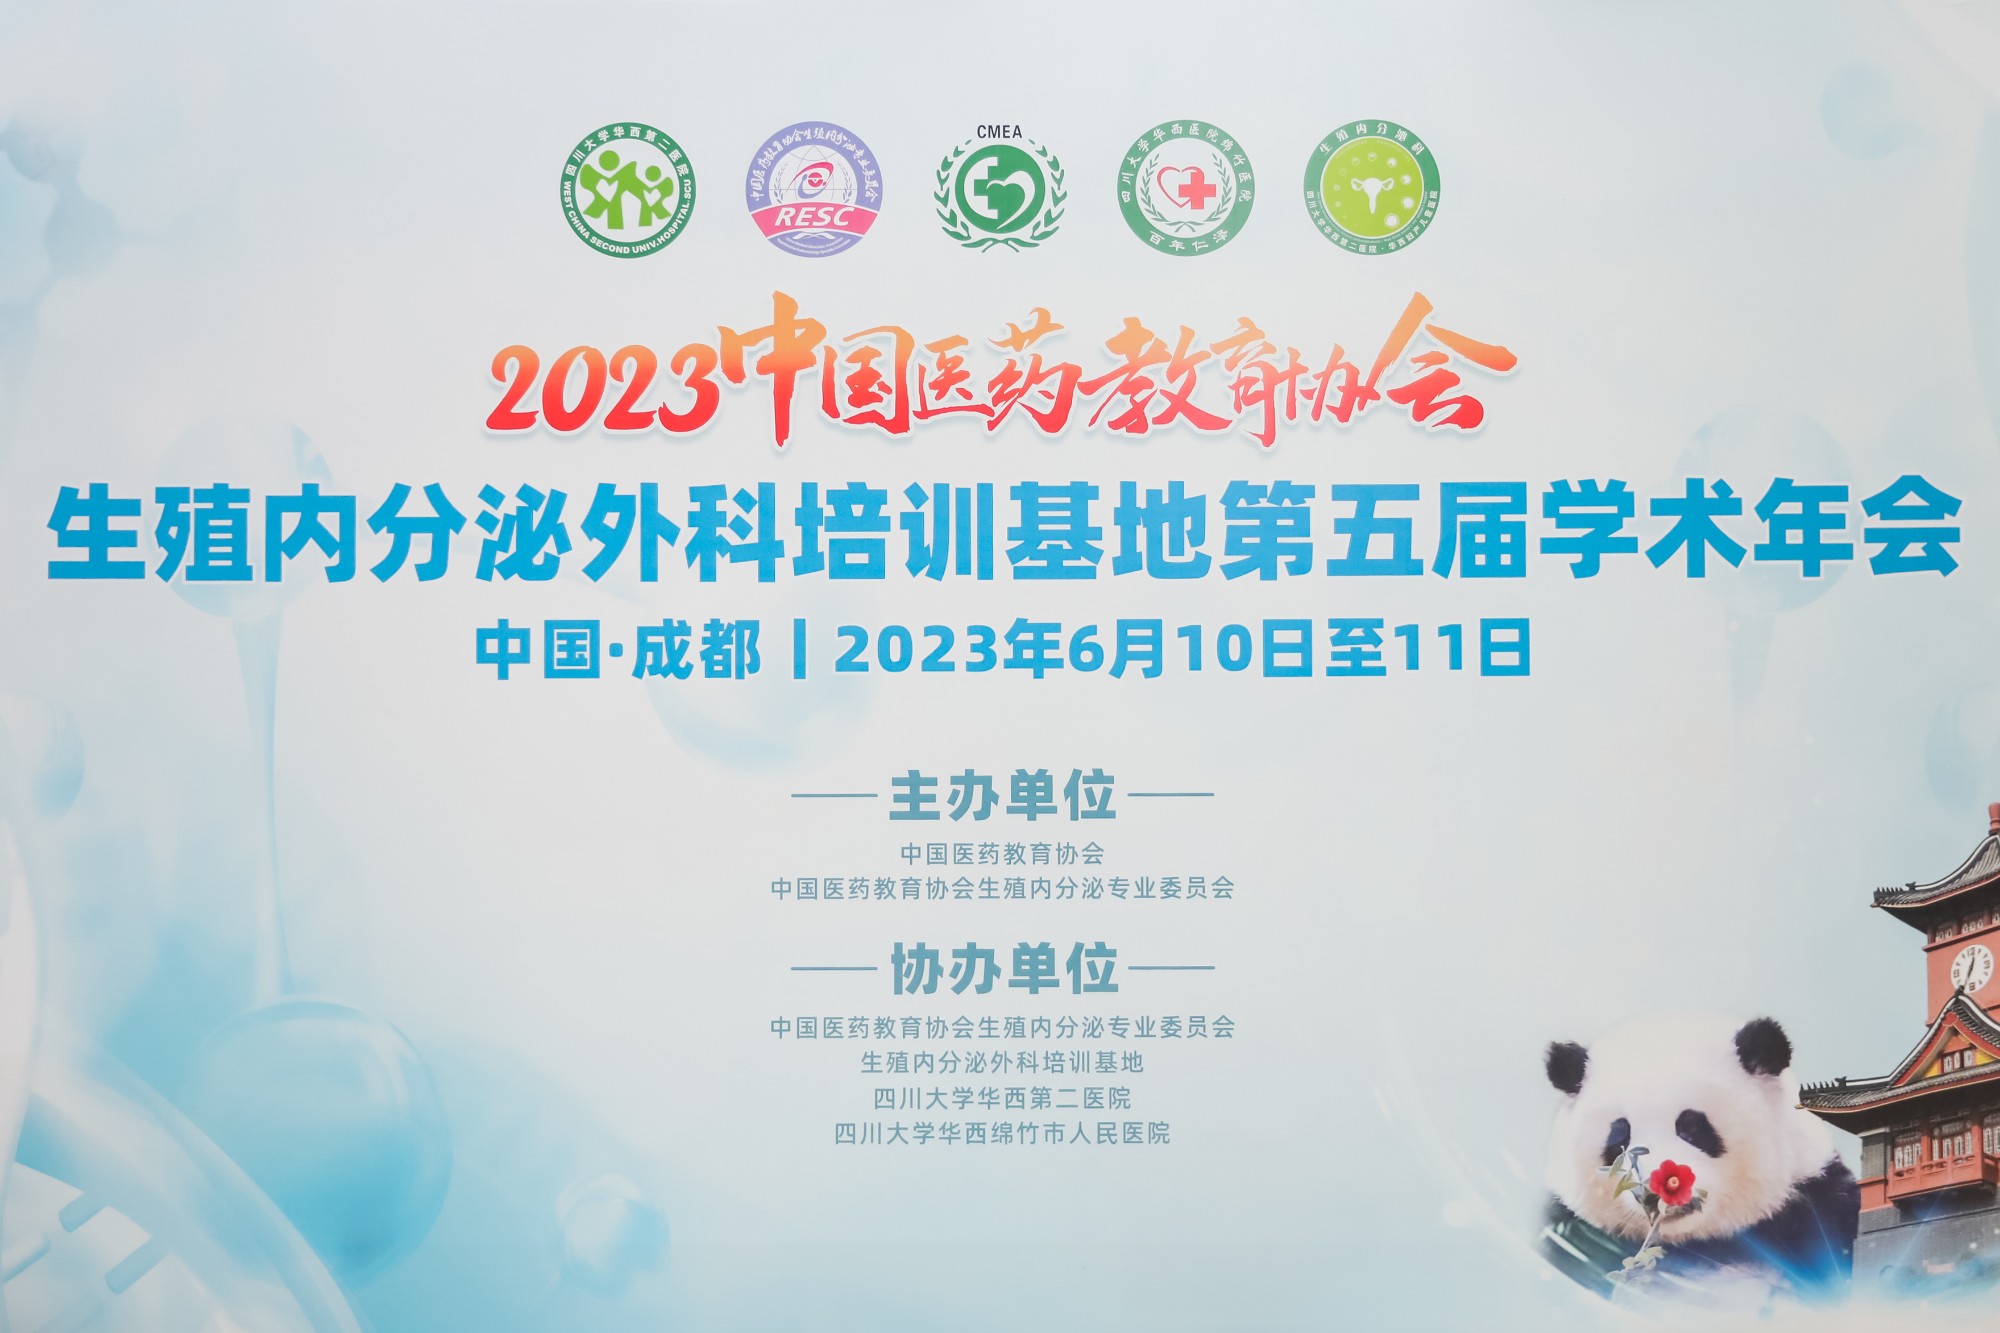 中国医药教育协会生殖内分泌外科培训基地第五届年会成功召开